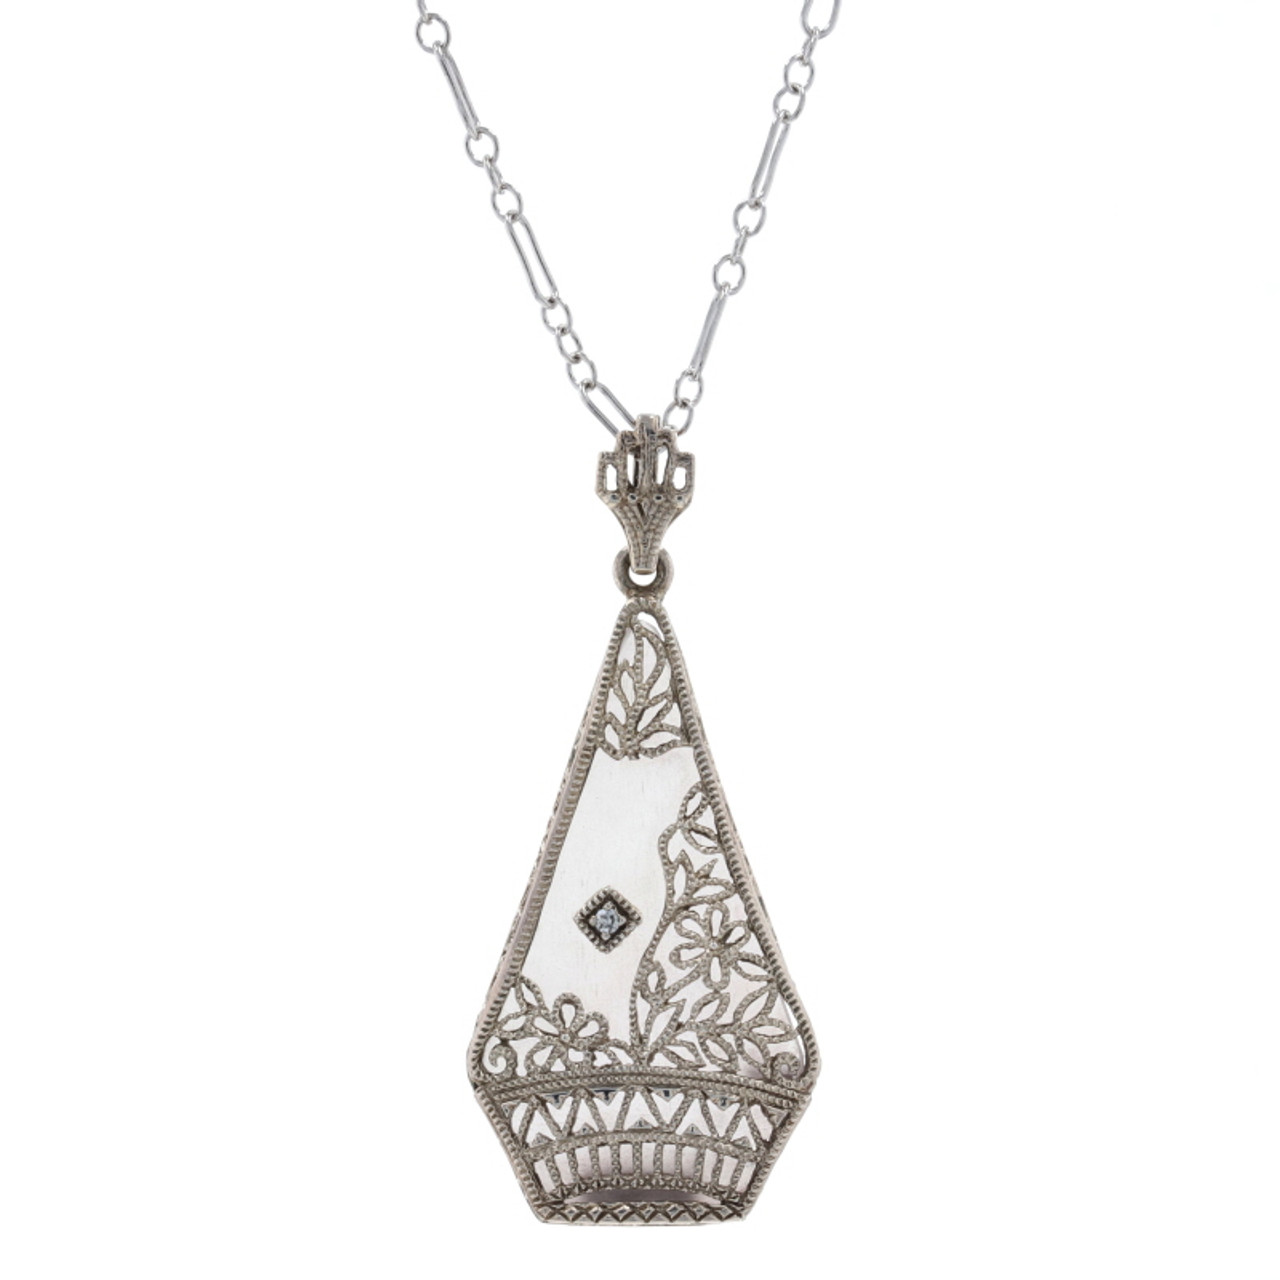 1928 Camphor Glass Classic Necklace - Shop time-vintage Necklaces - Pinkoi